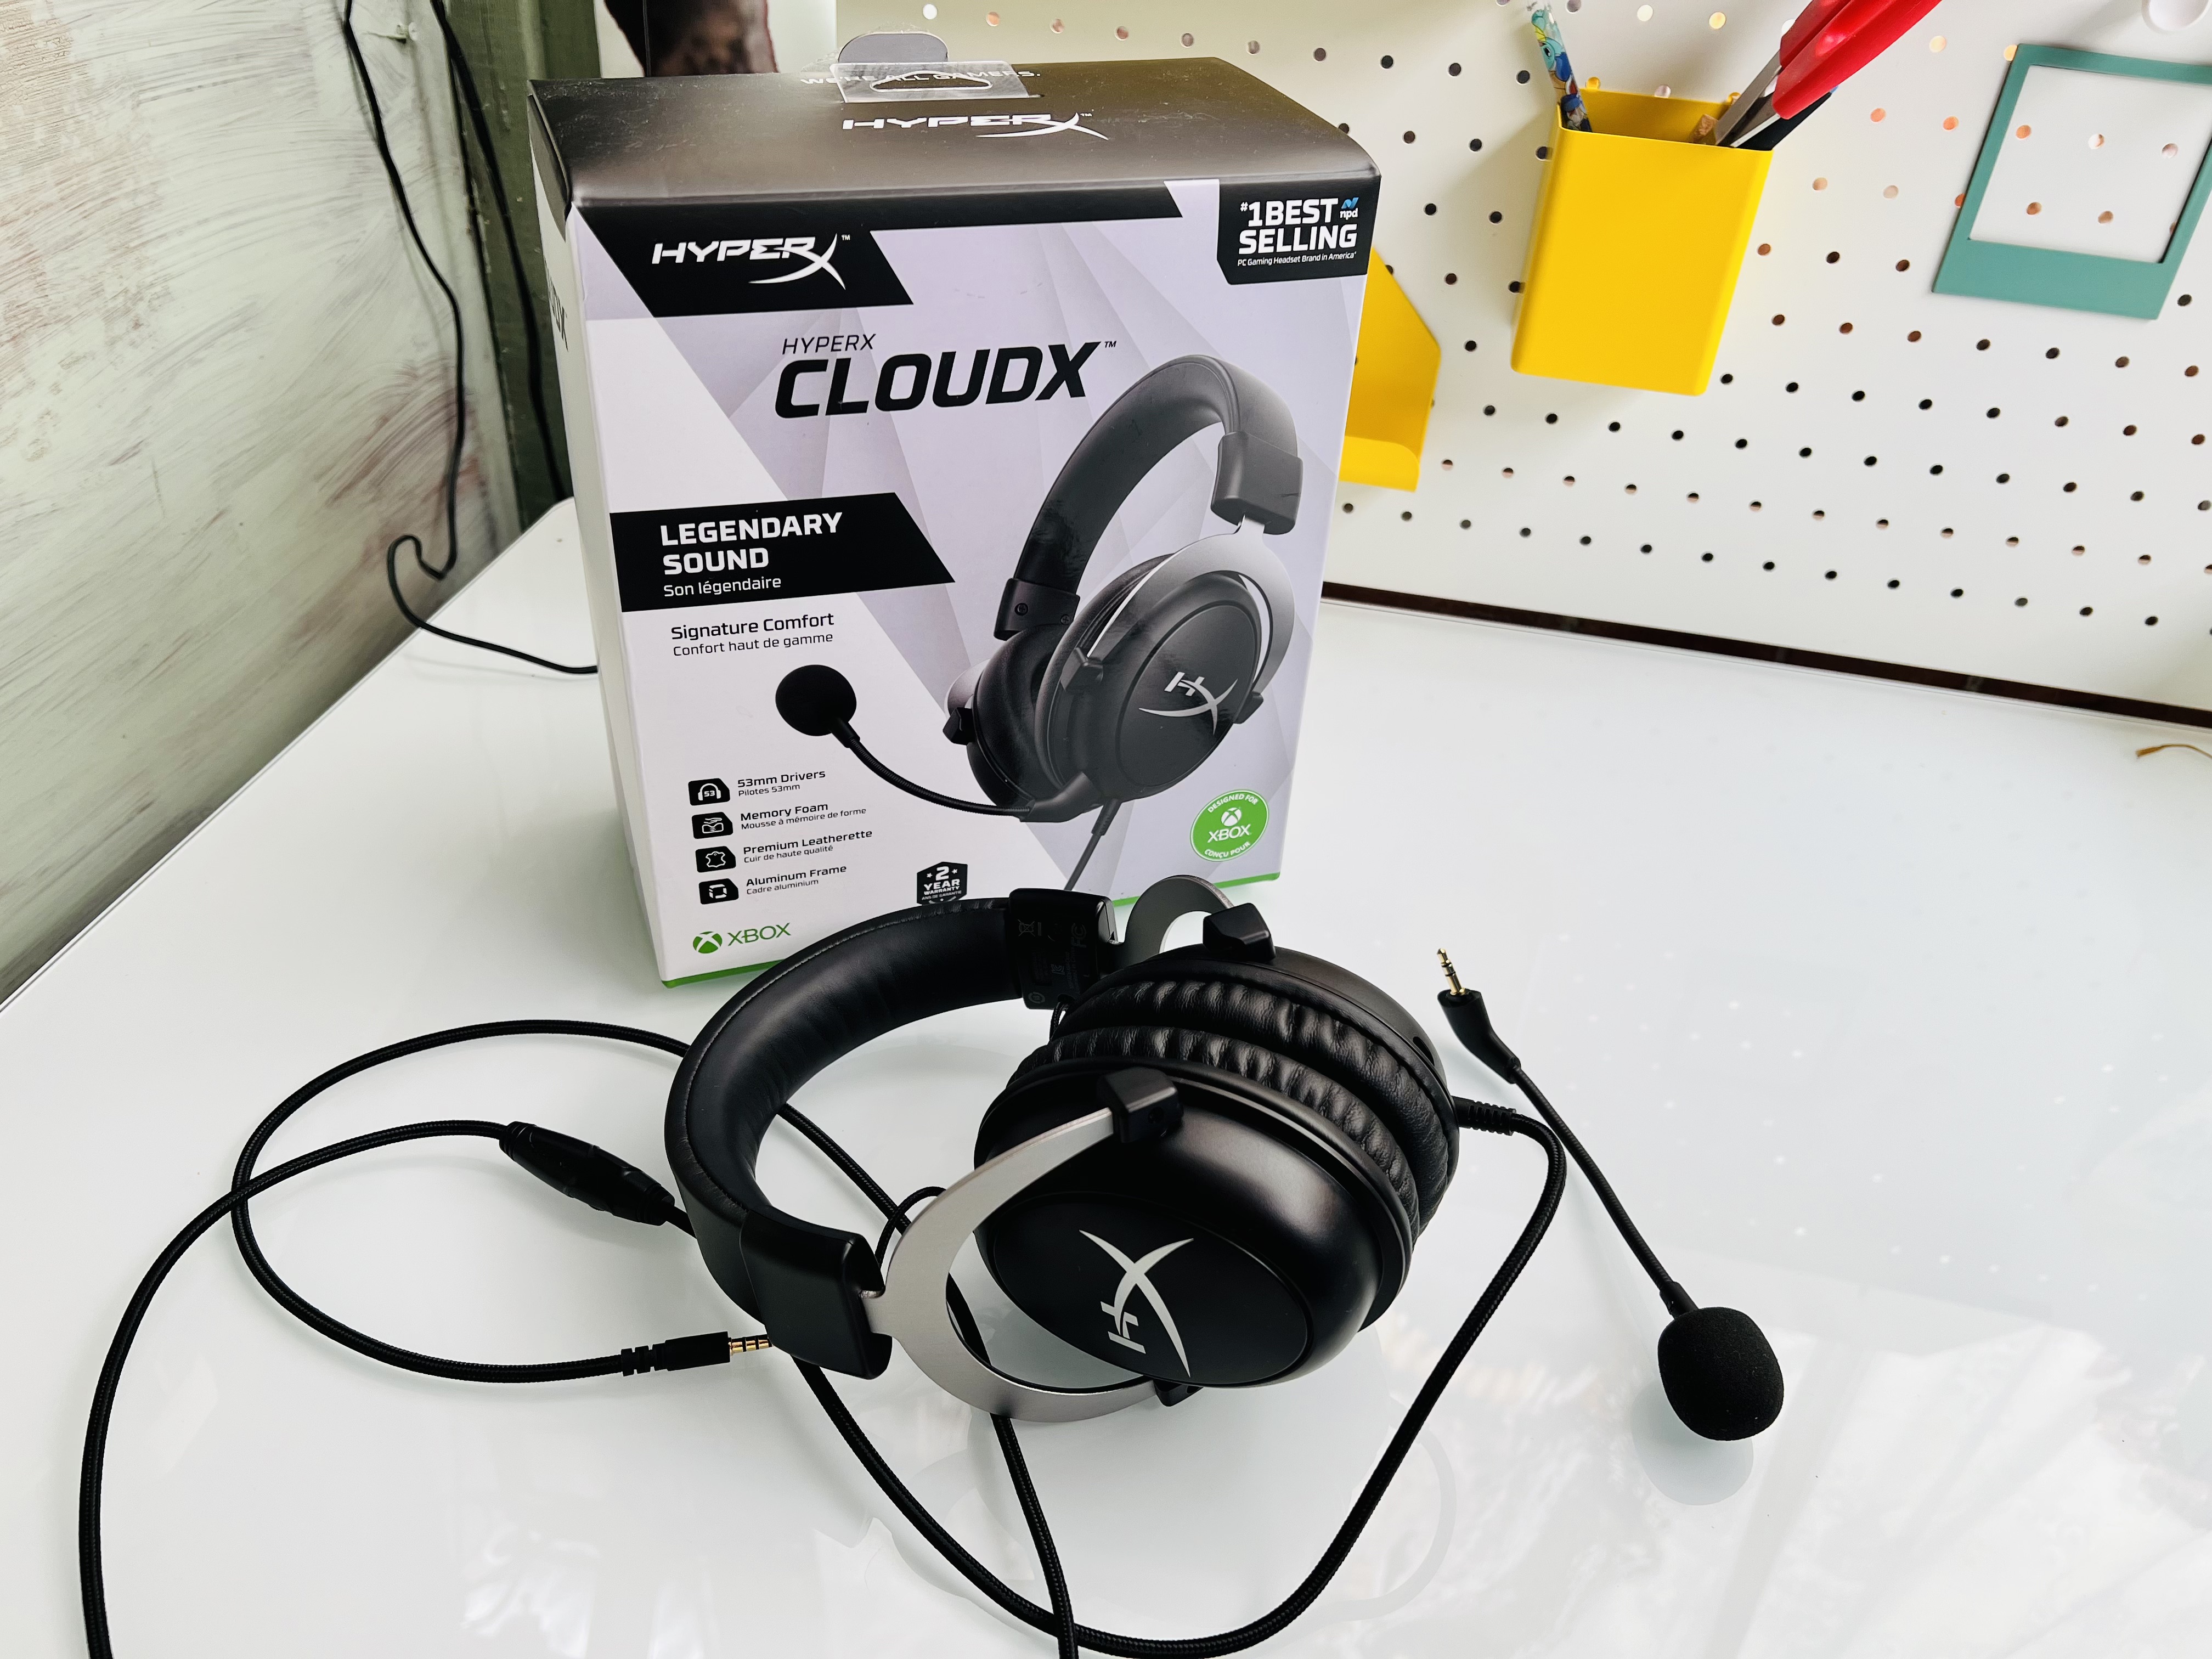 HyperX CloudX headset